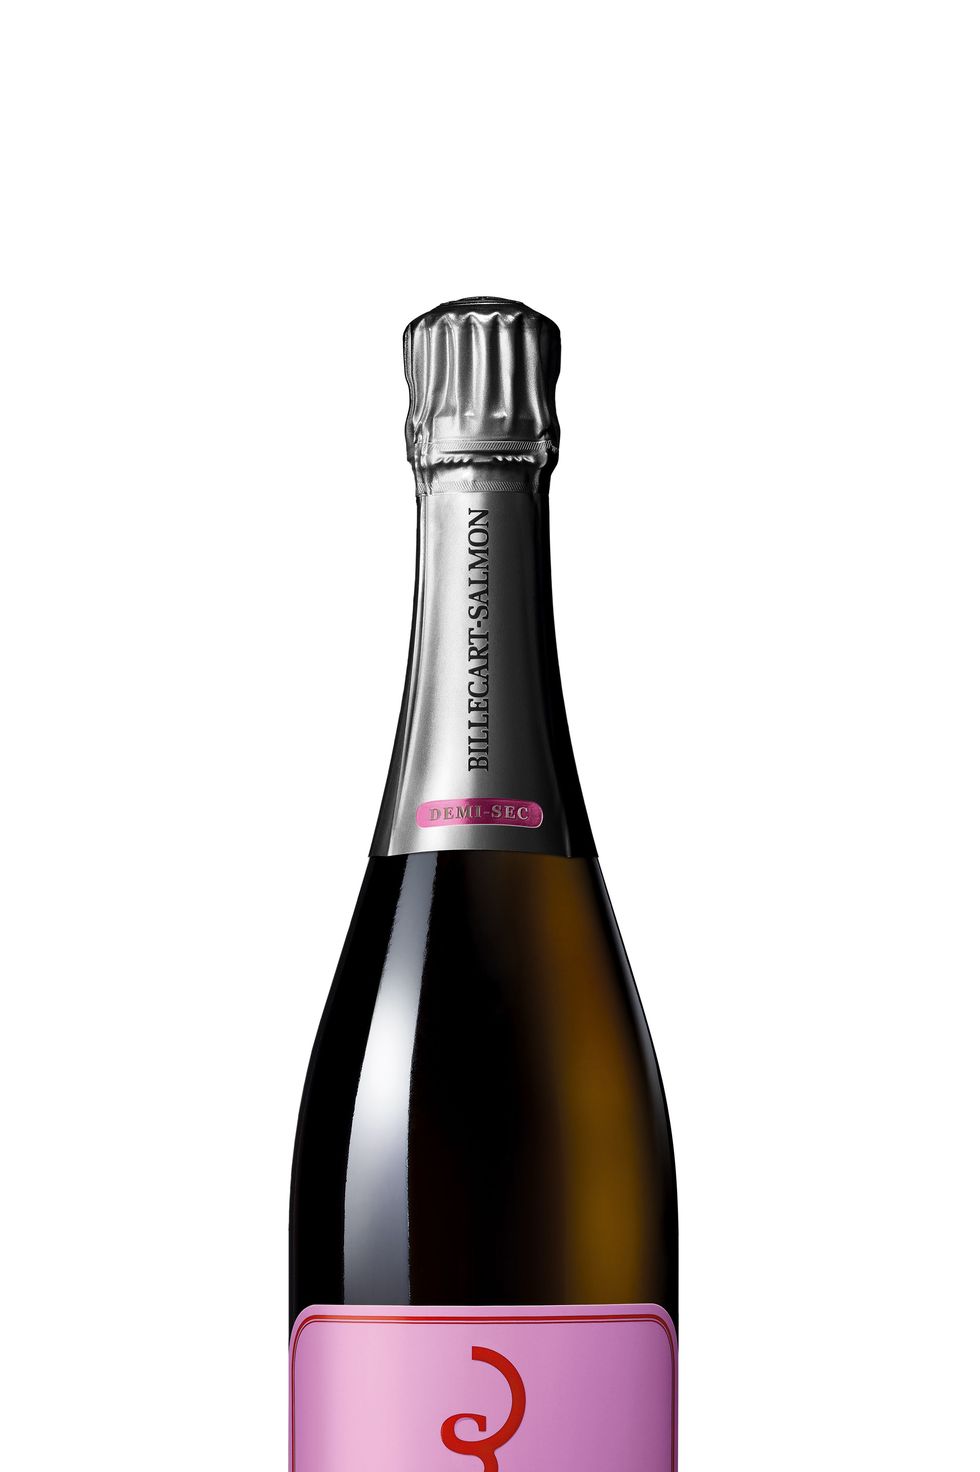 Sweet Champagne – Doux, Demi Sec, Sec – Fizz Champagne & Bubbles Club